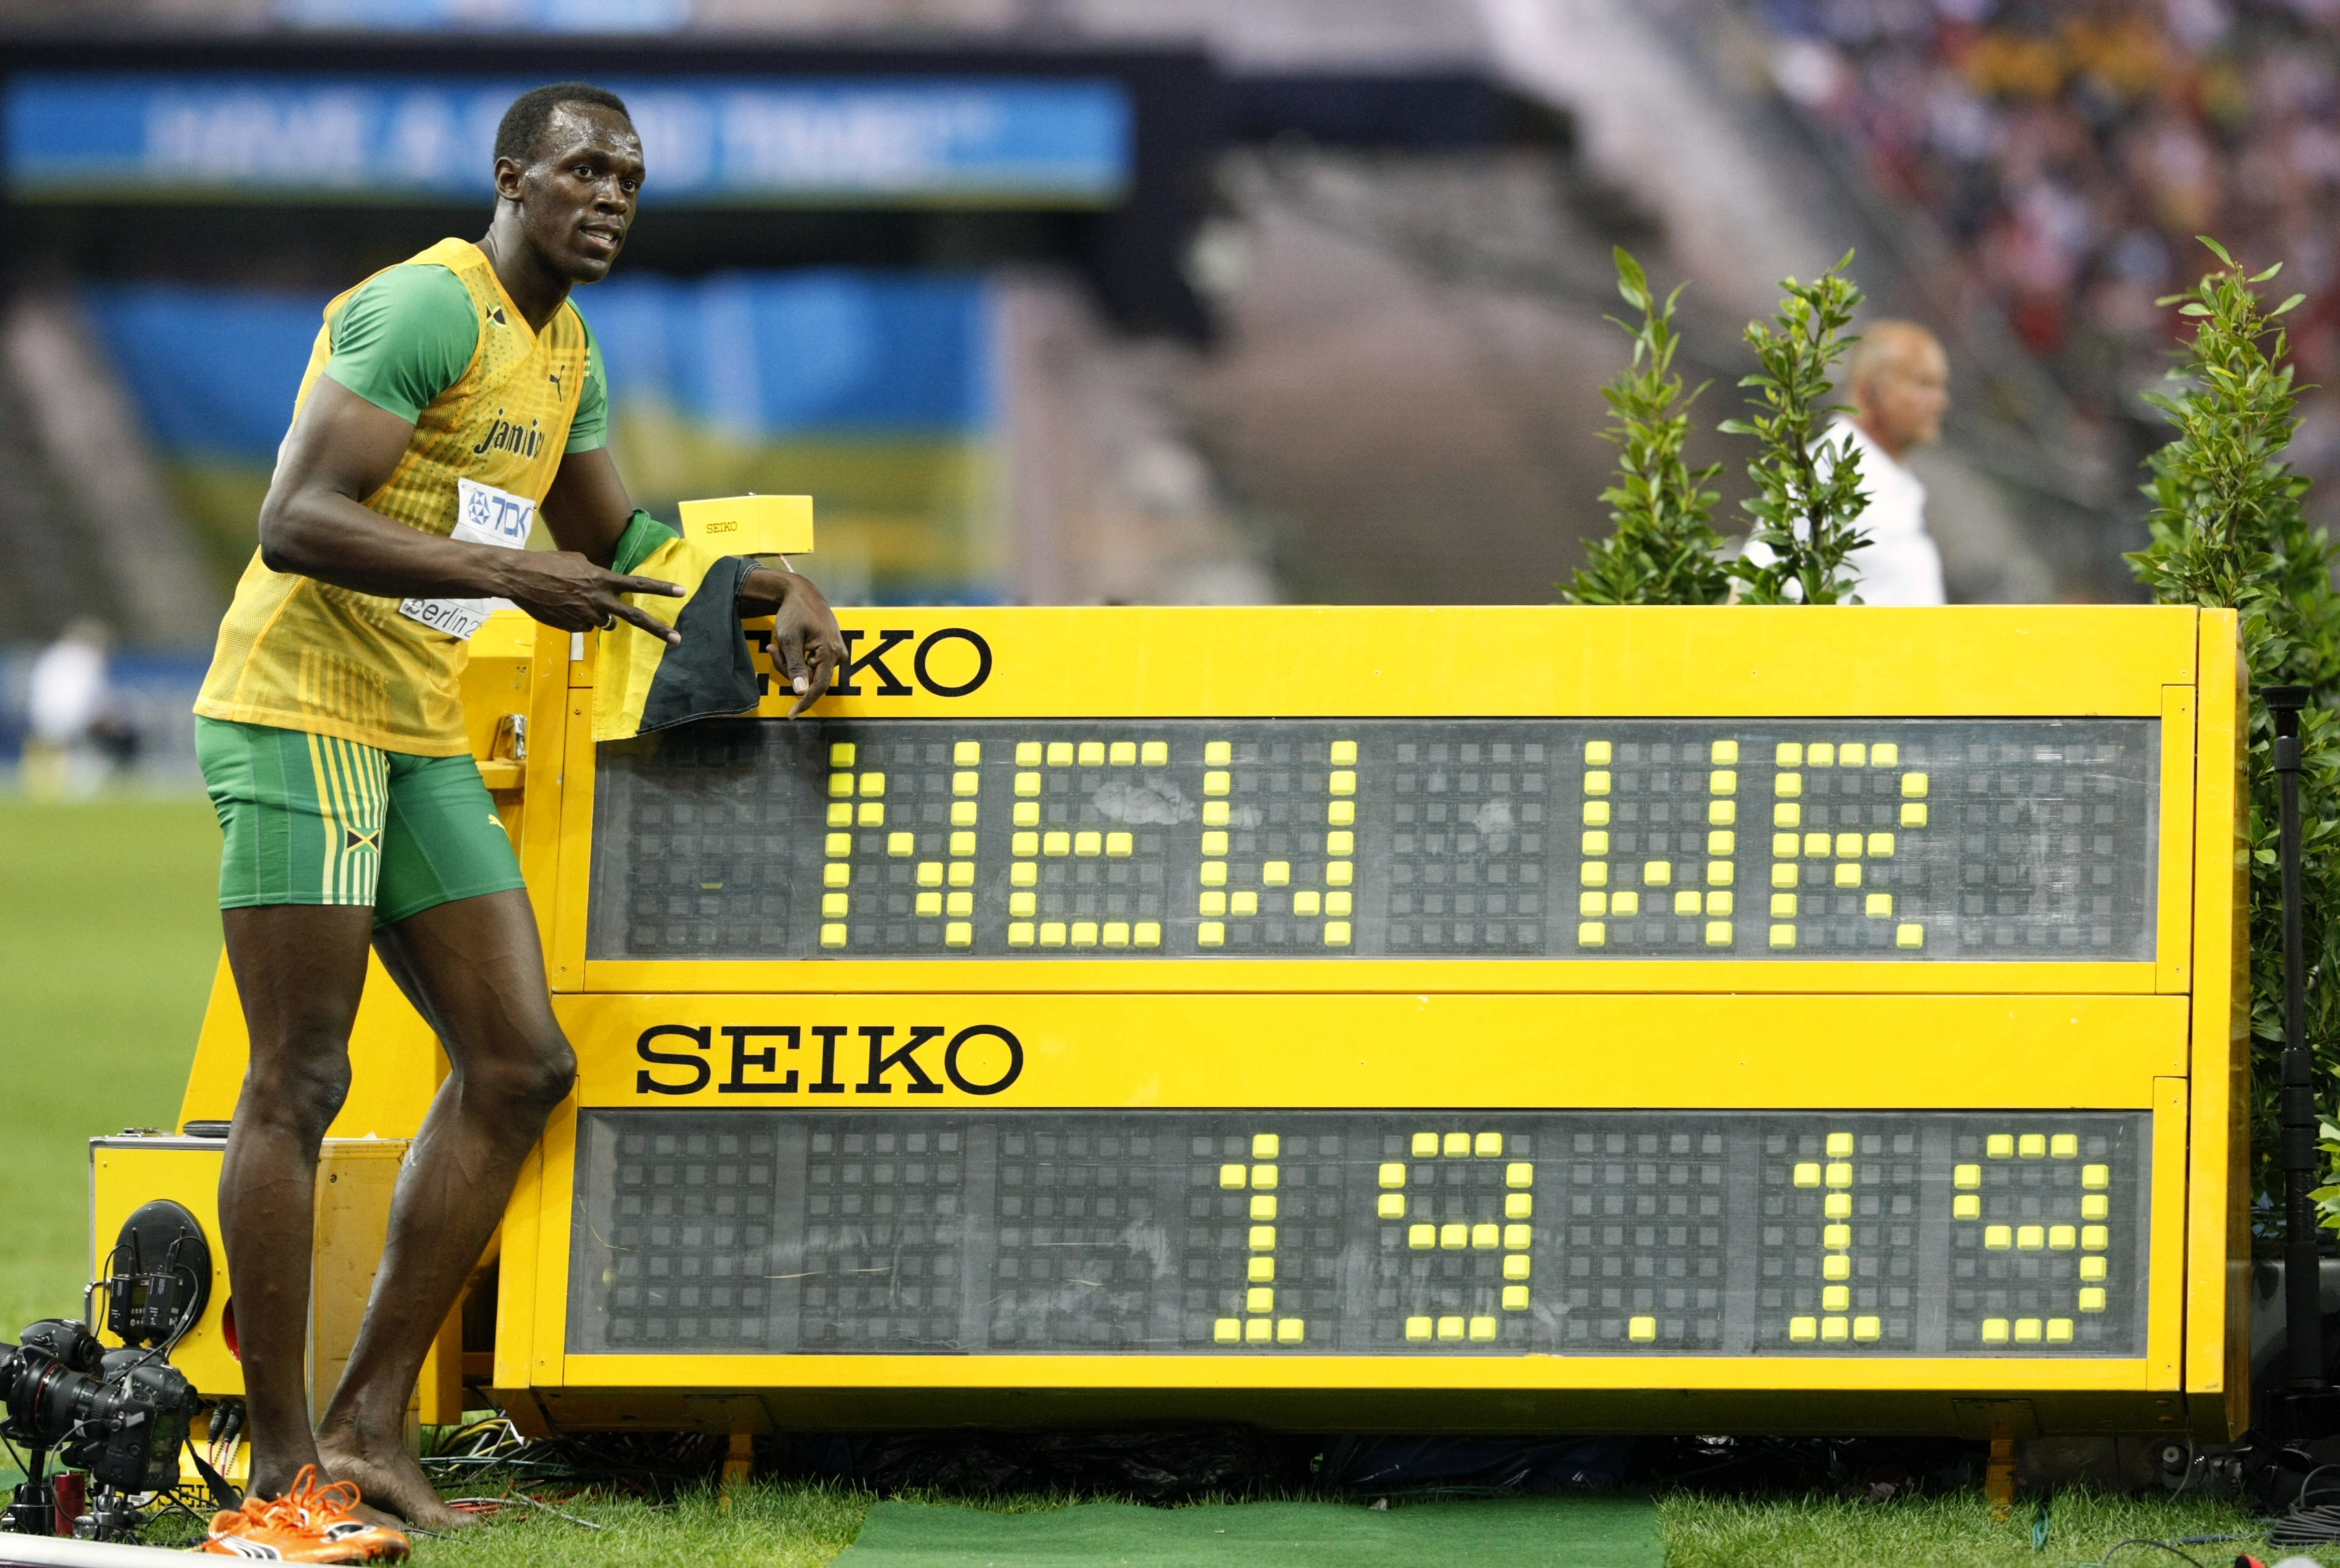 2009 세계육상선수권대회에서 200m 세계신기록을 세운 우사인 볼트